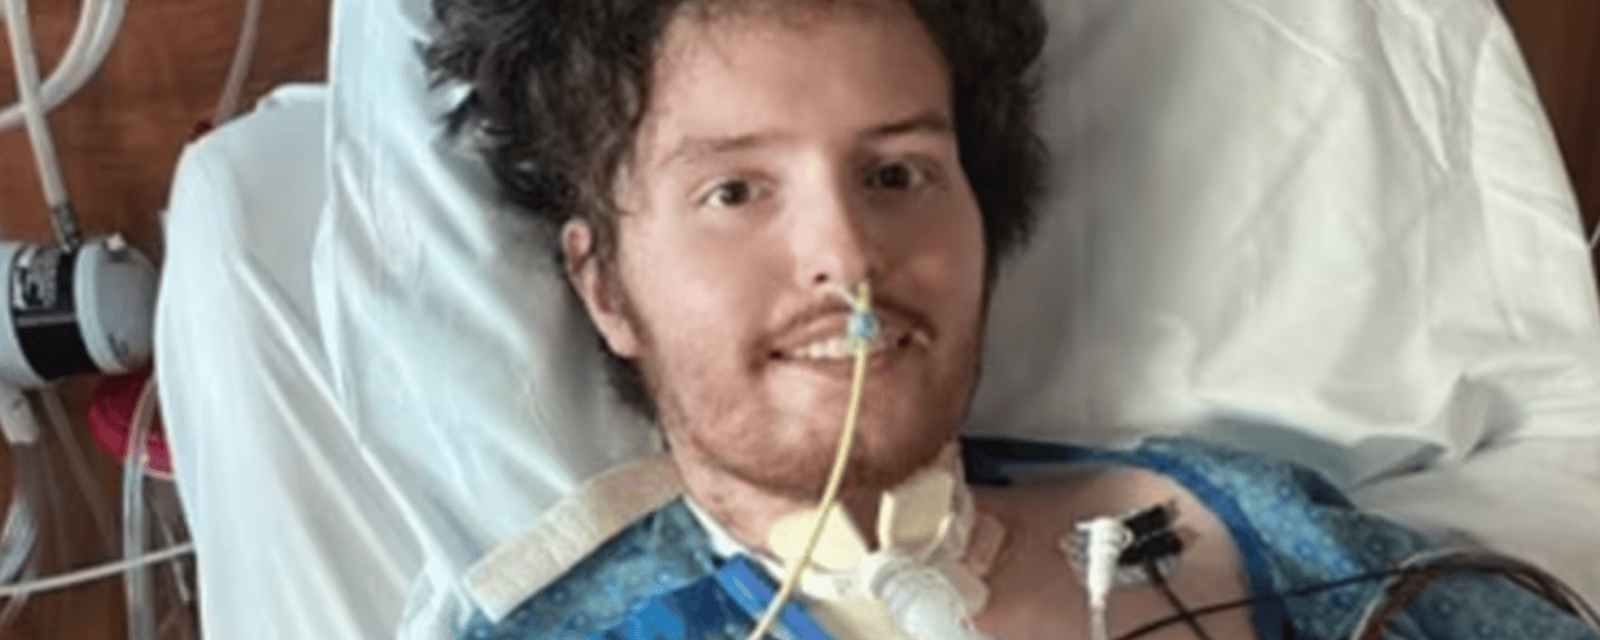 Transplantation de deux nouveaux poumons pour un jeune de 22 ans qui vapotait à outrance